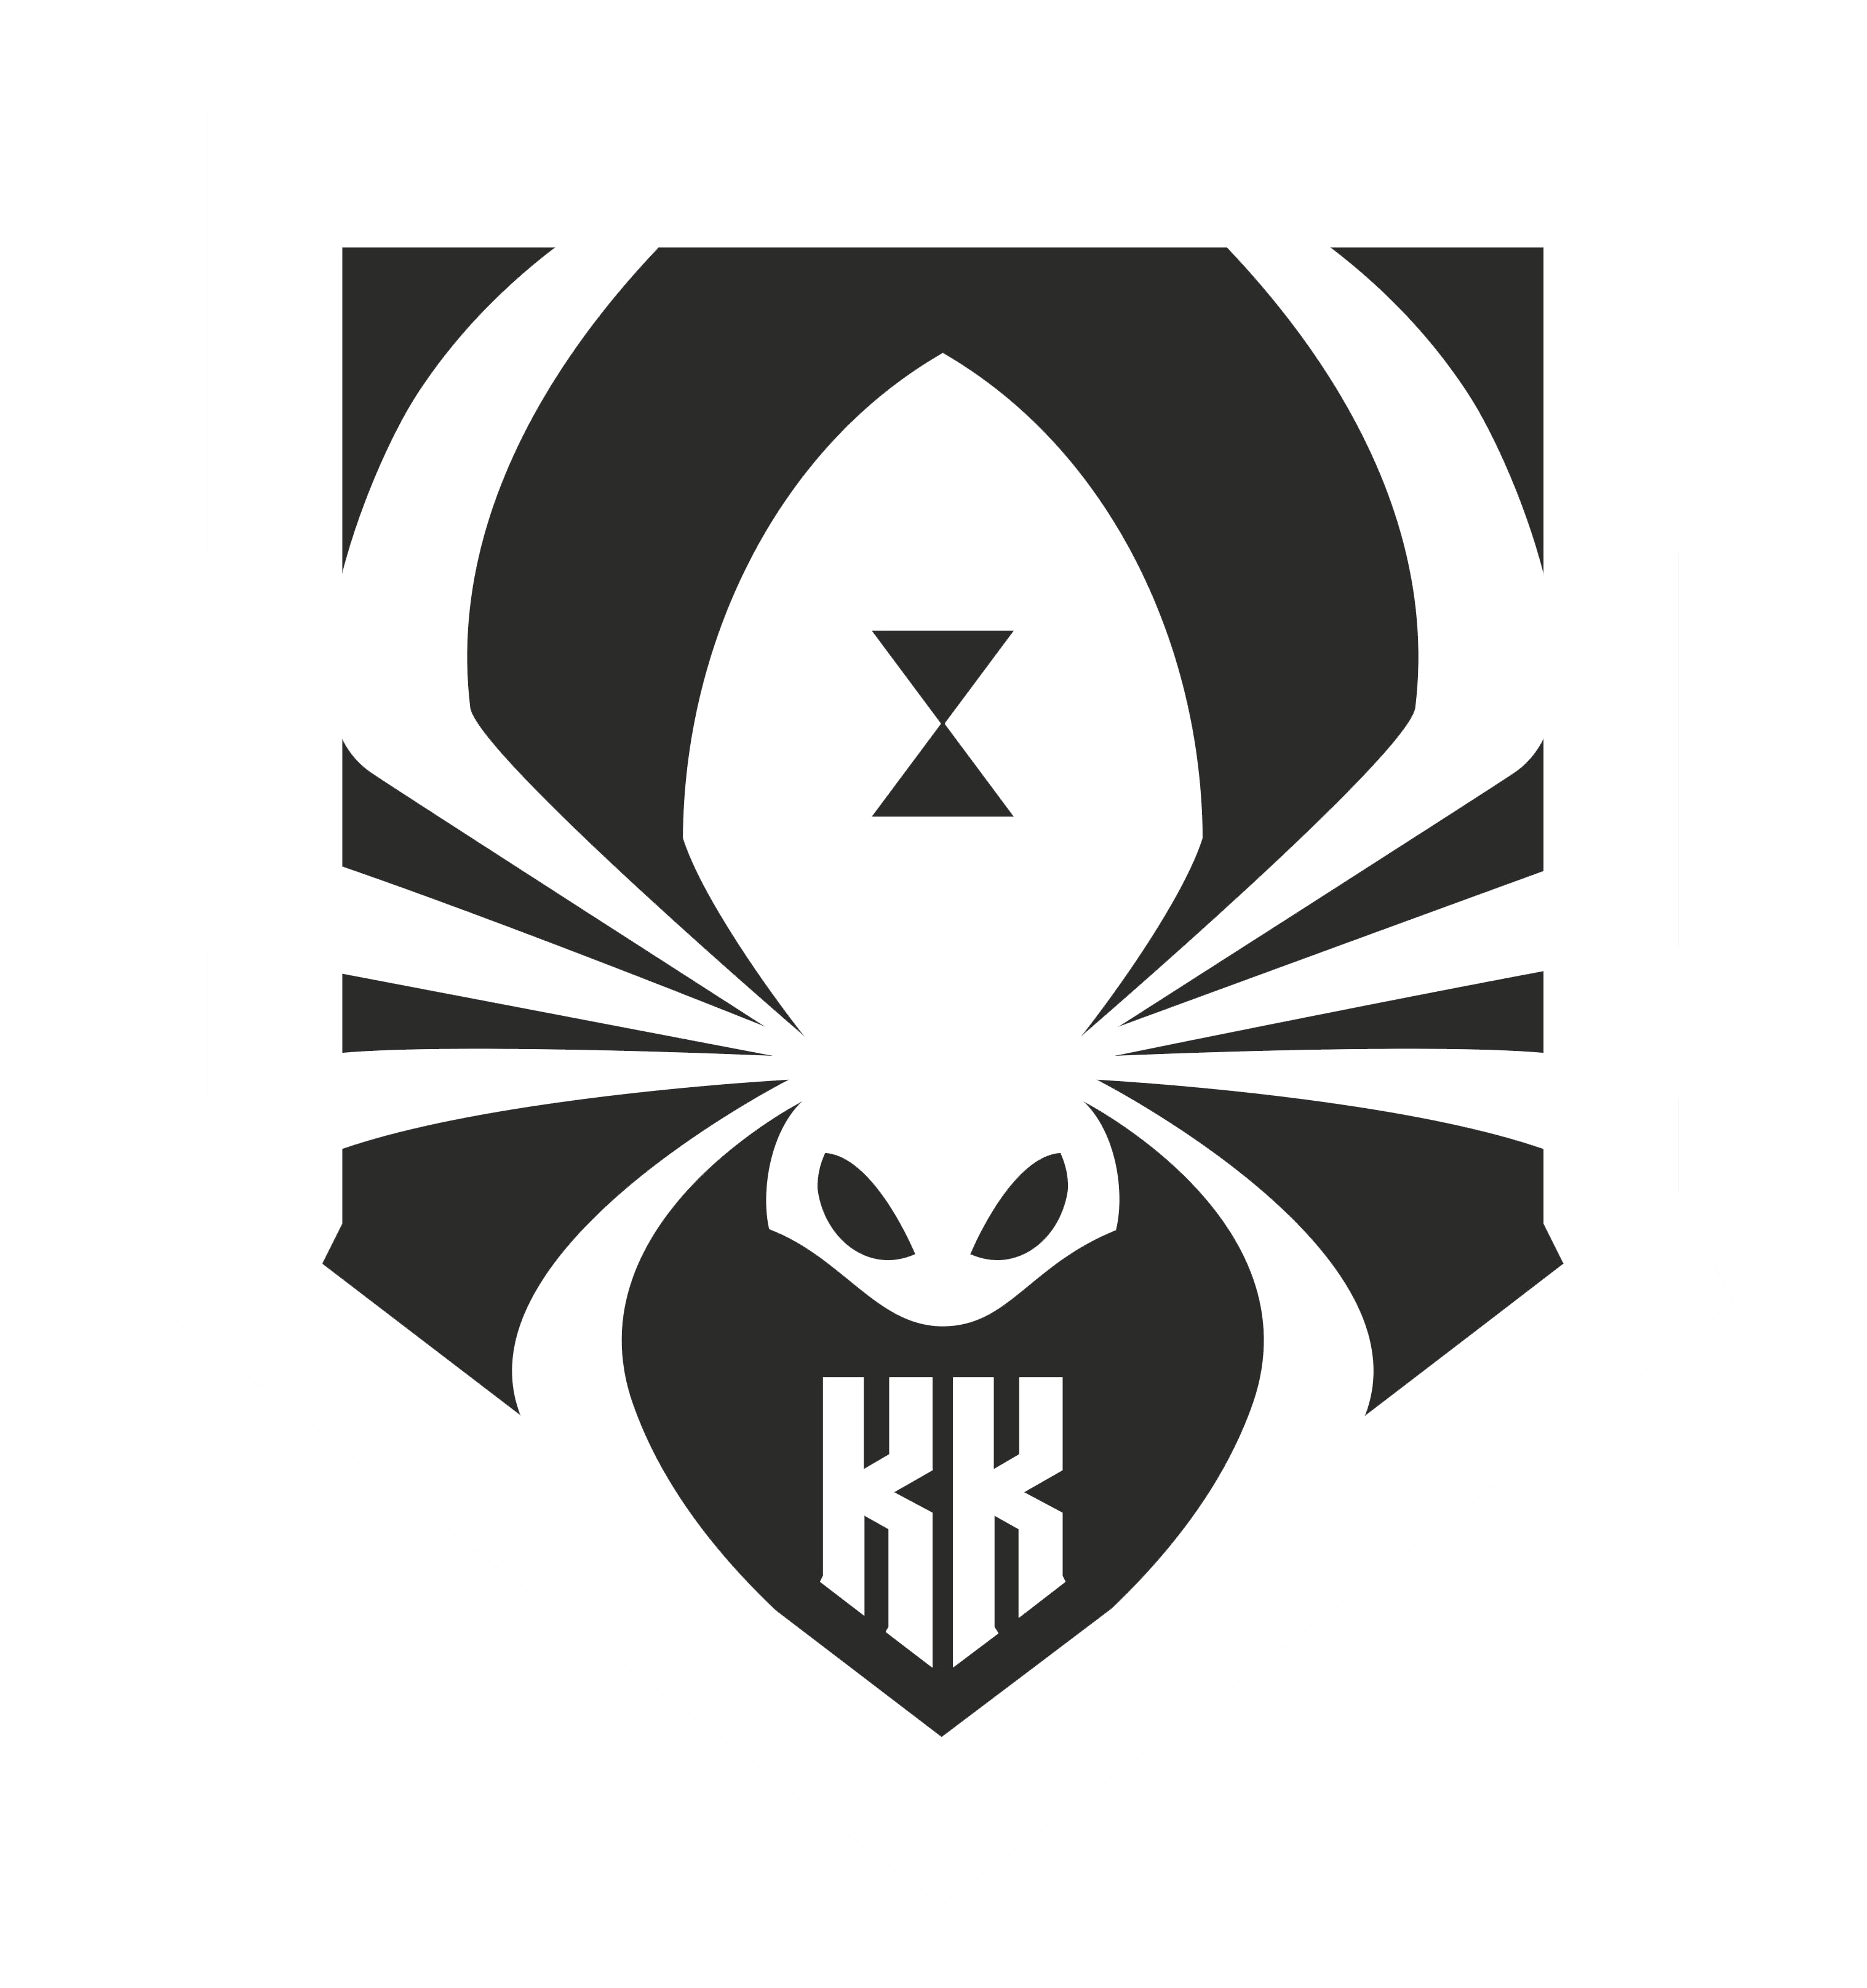 Kumo Krew logo